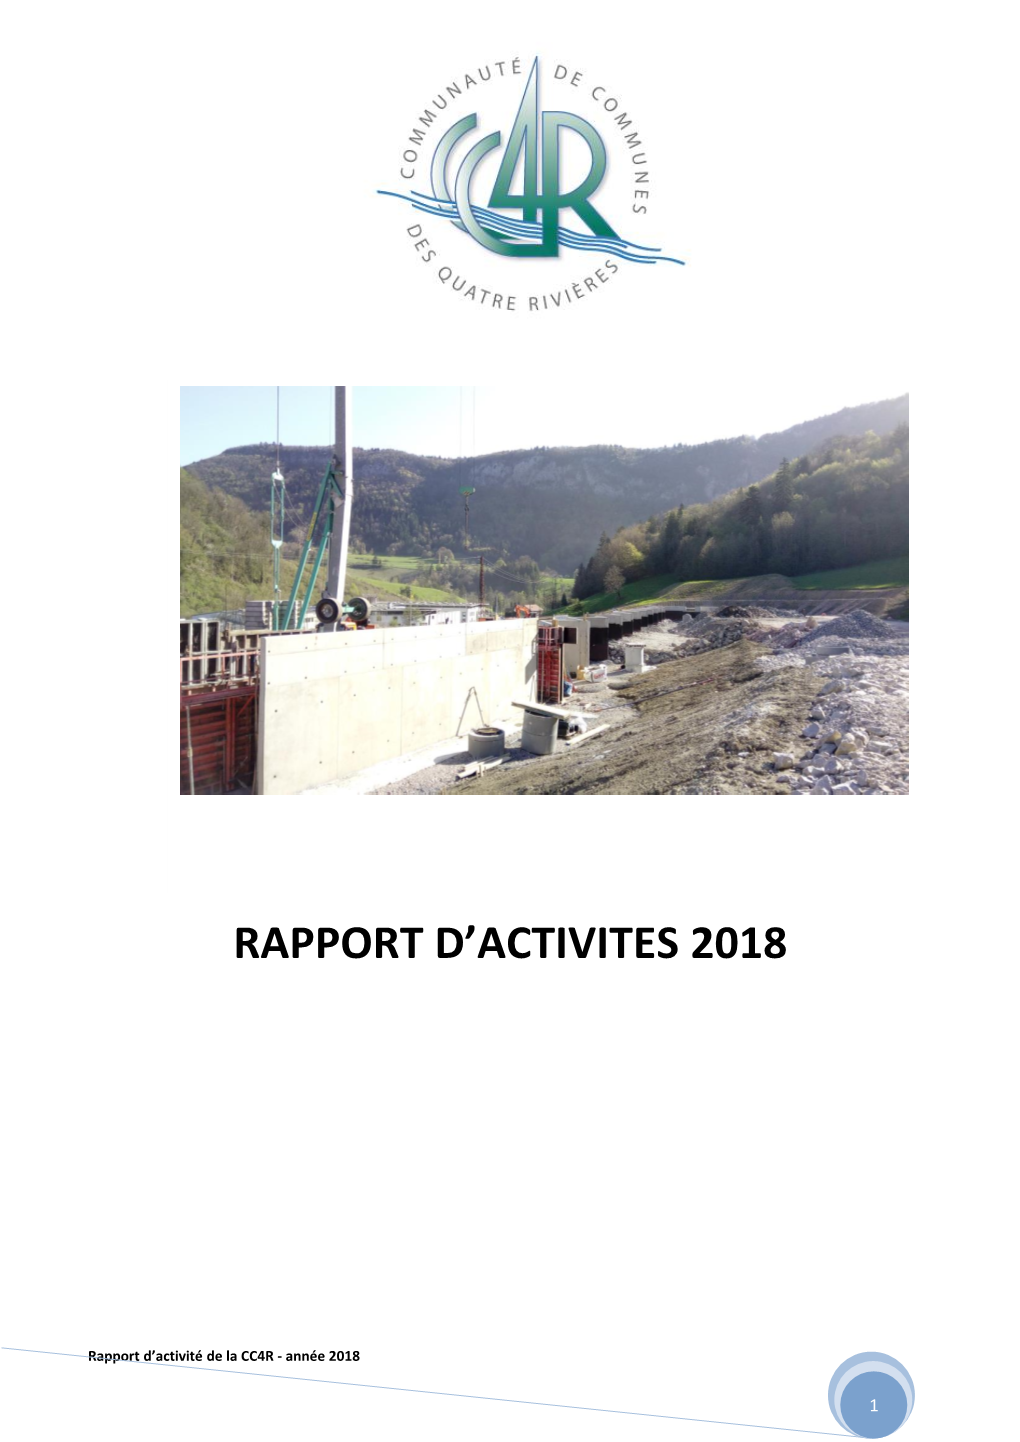 Rapport D'activites 2018